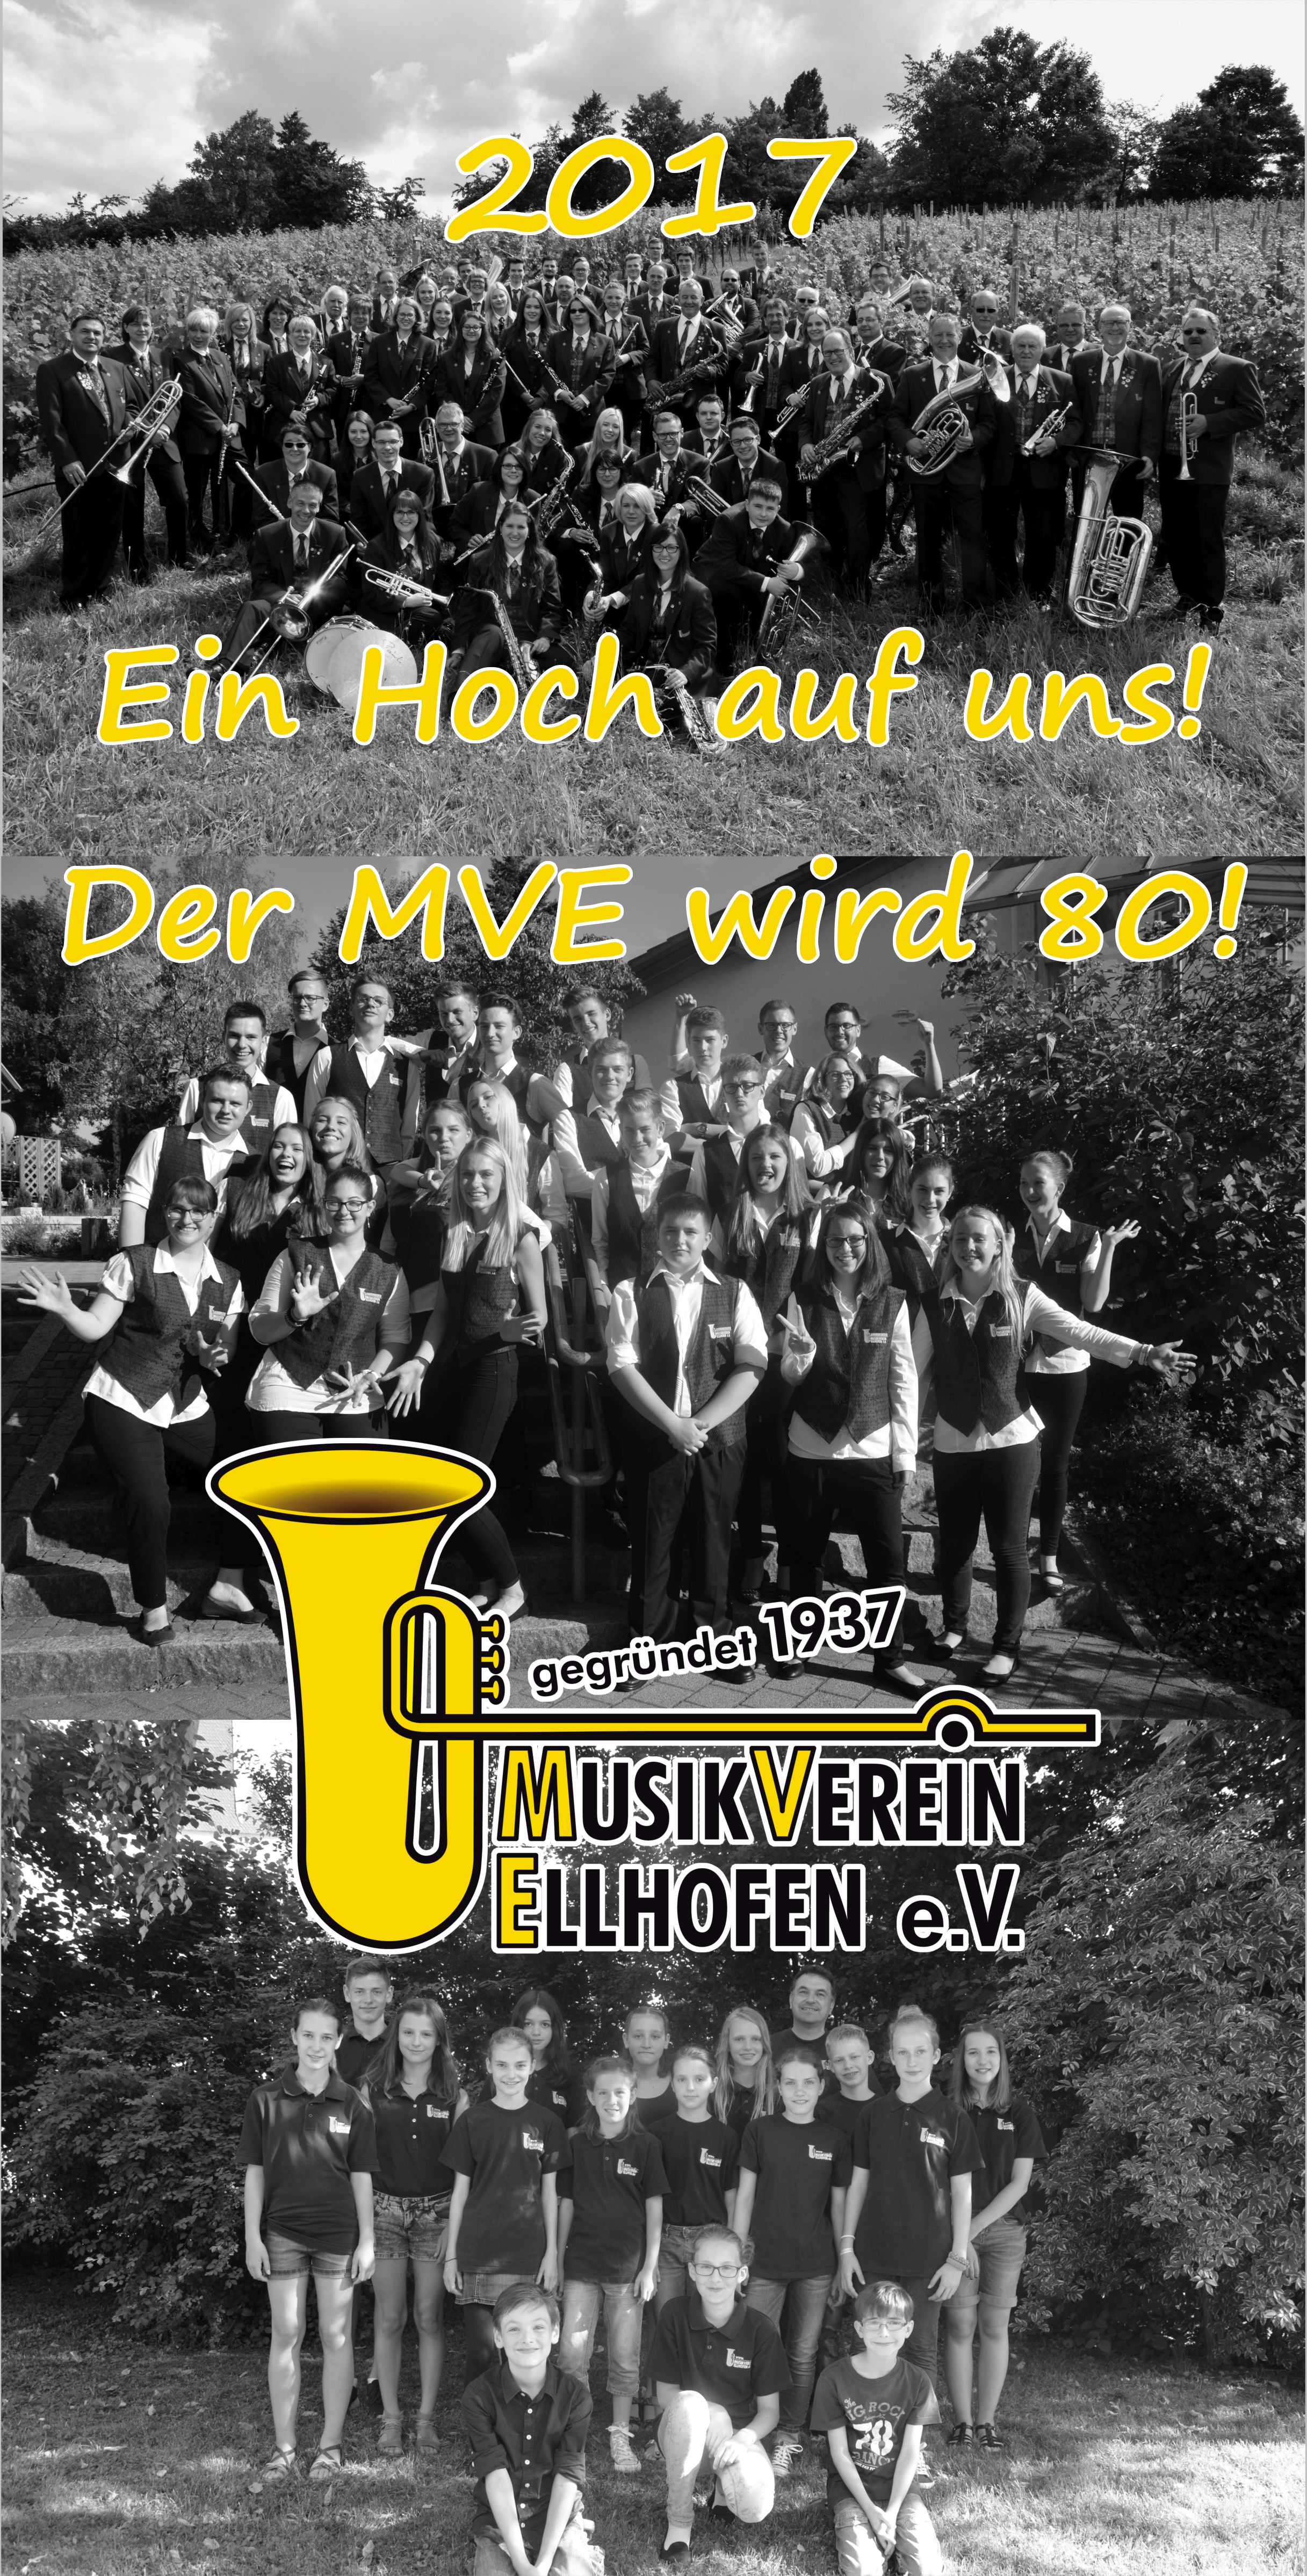 Festschrift zum 80 jährigen Jubiläum vom Musikverein Ellhofen